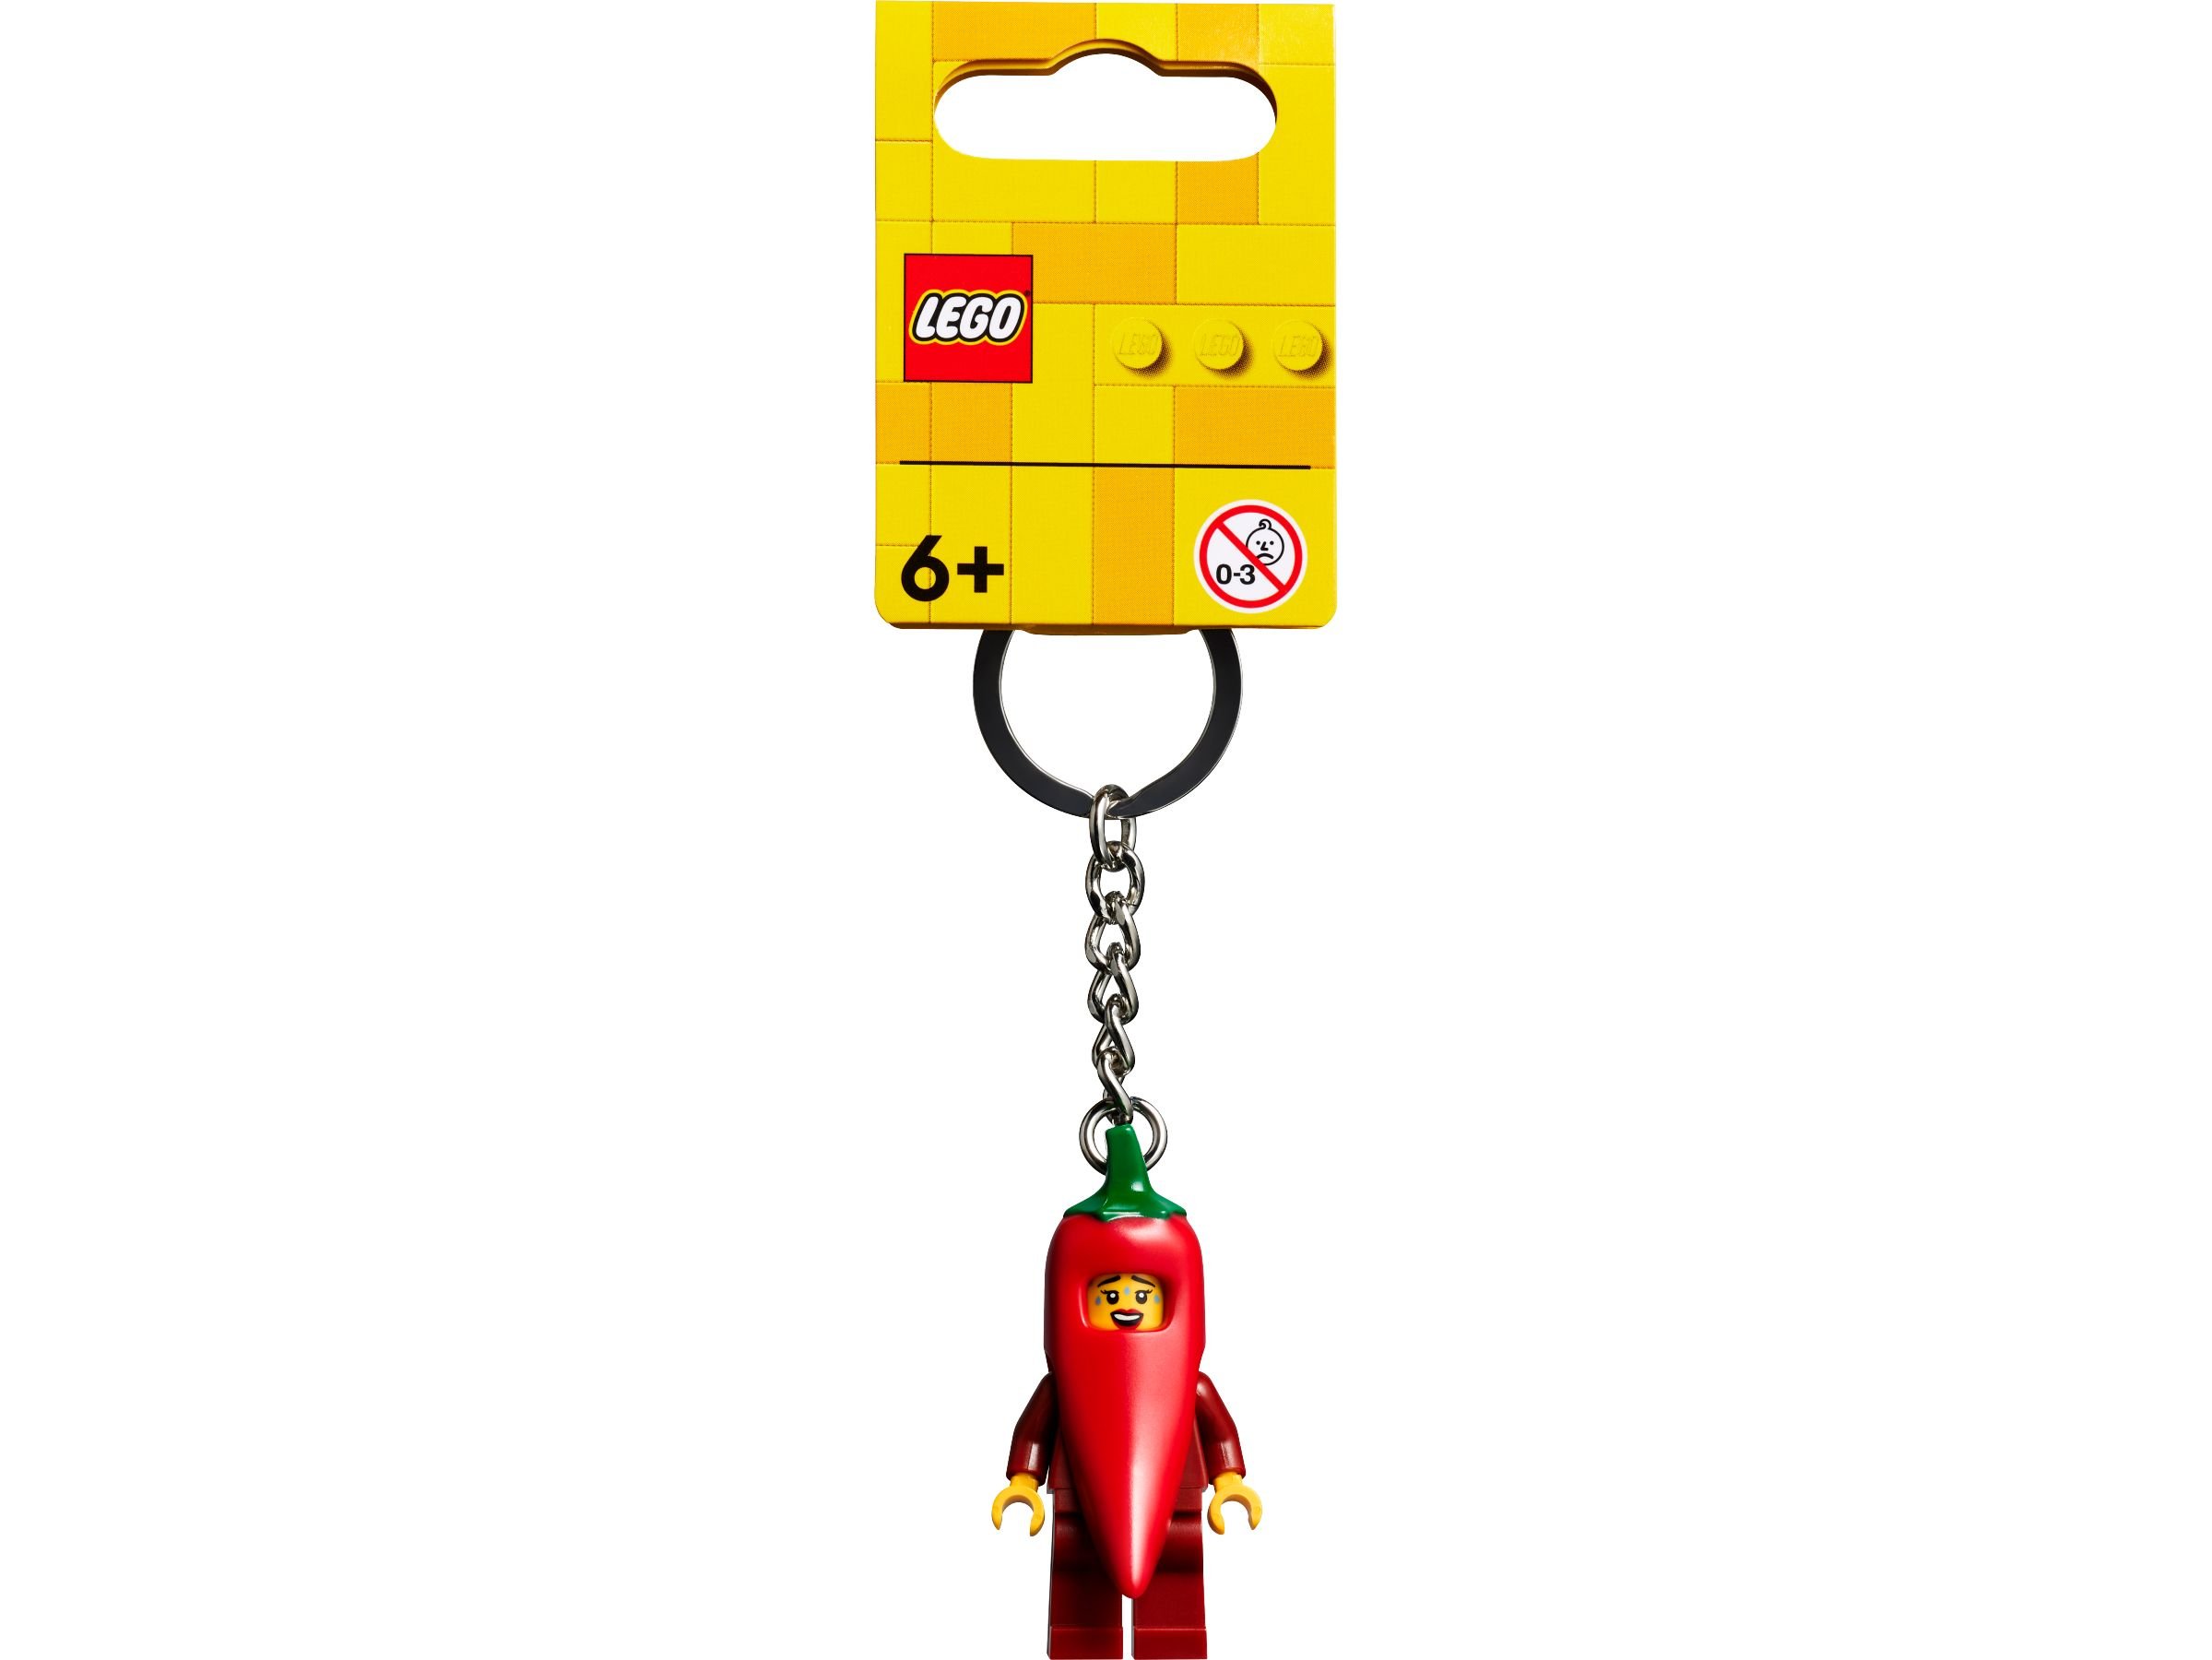 LEGO Gear 854234 Schlüsselanhänger mit Chilischoten-Mädchen LEGO_854234_alt1.jpg